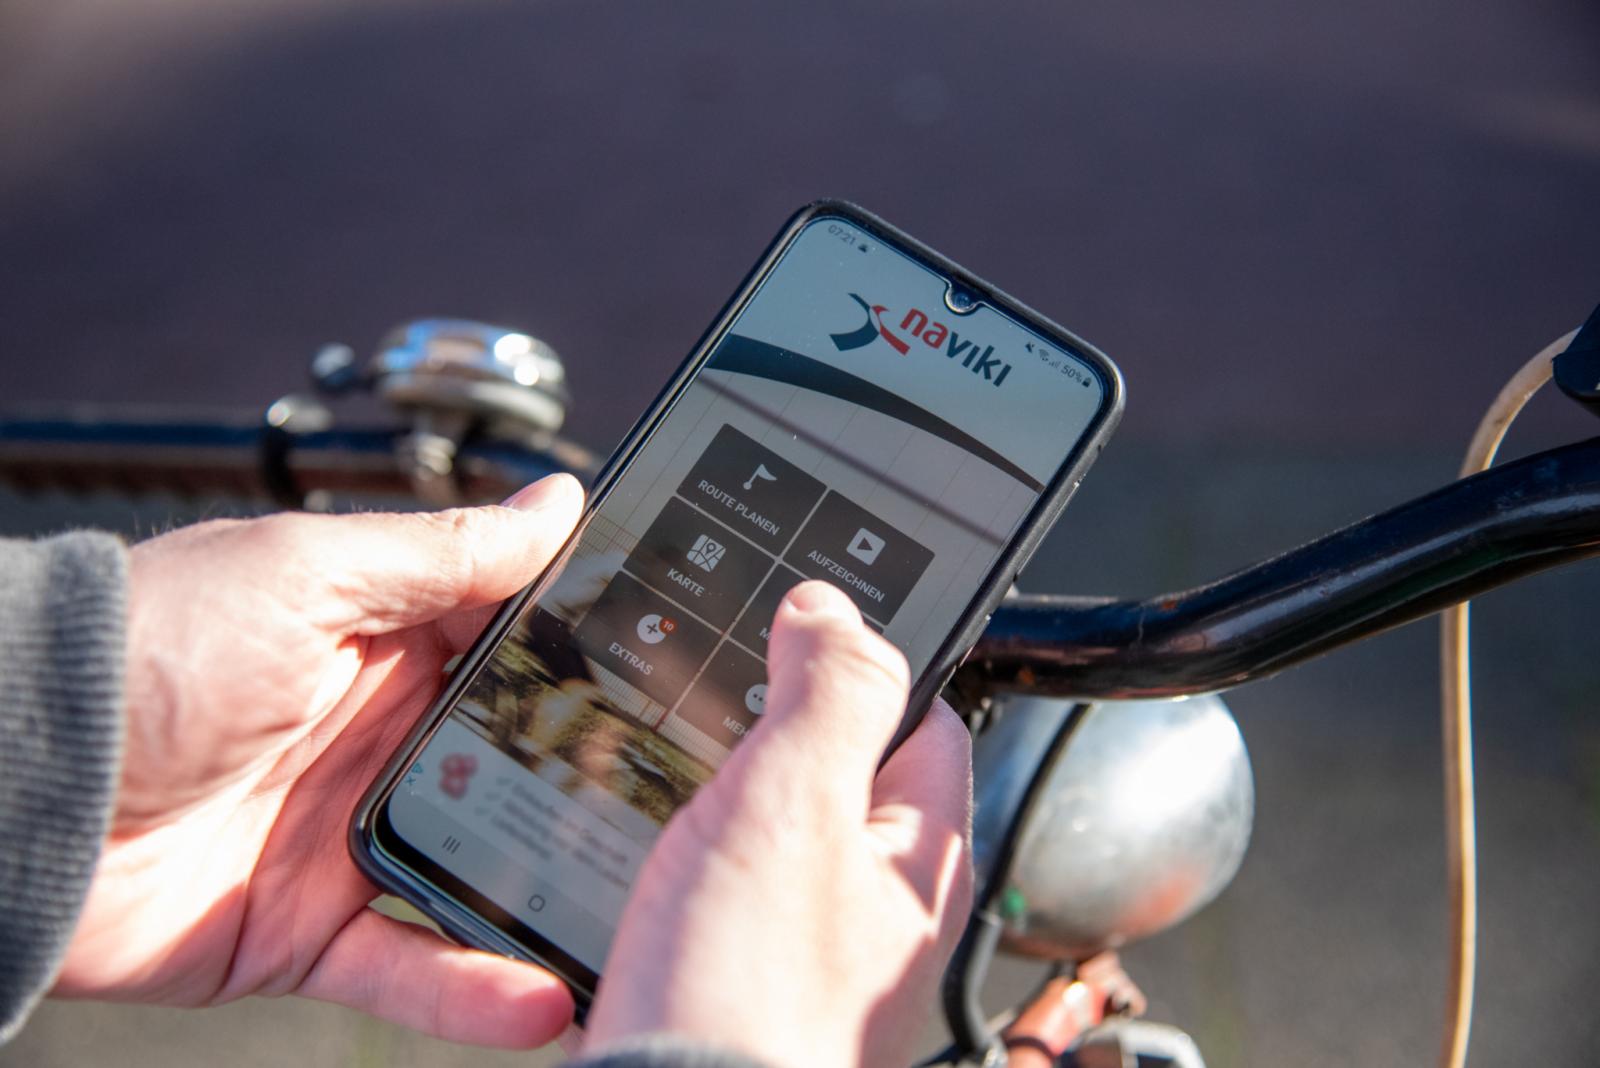 Geöffnete Naviki-App auf einem Smartphone, gehalten von einer Person auf einem Rad.